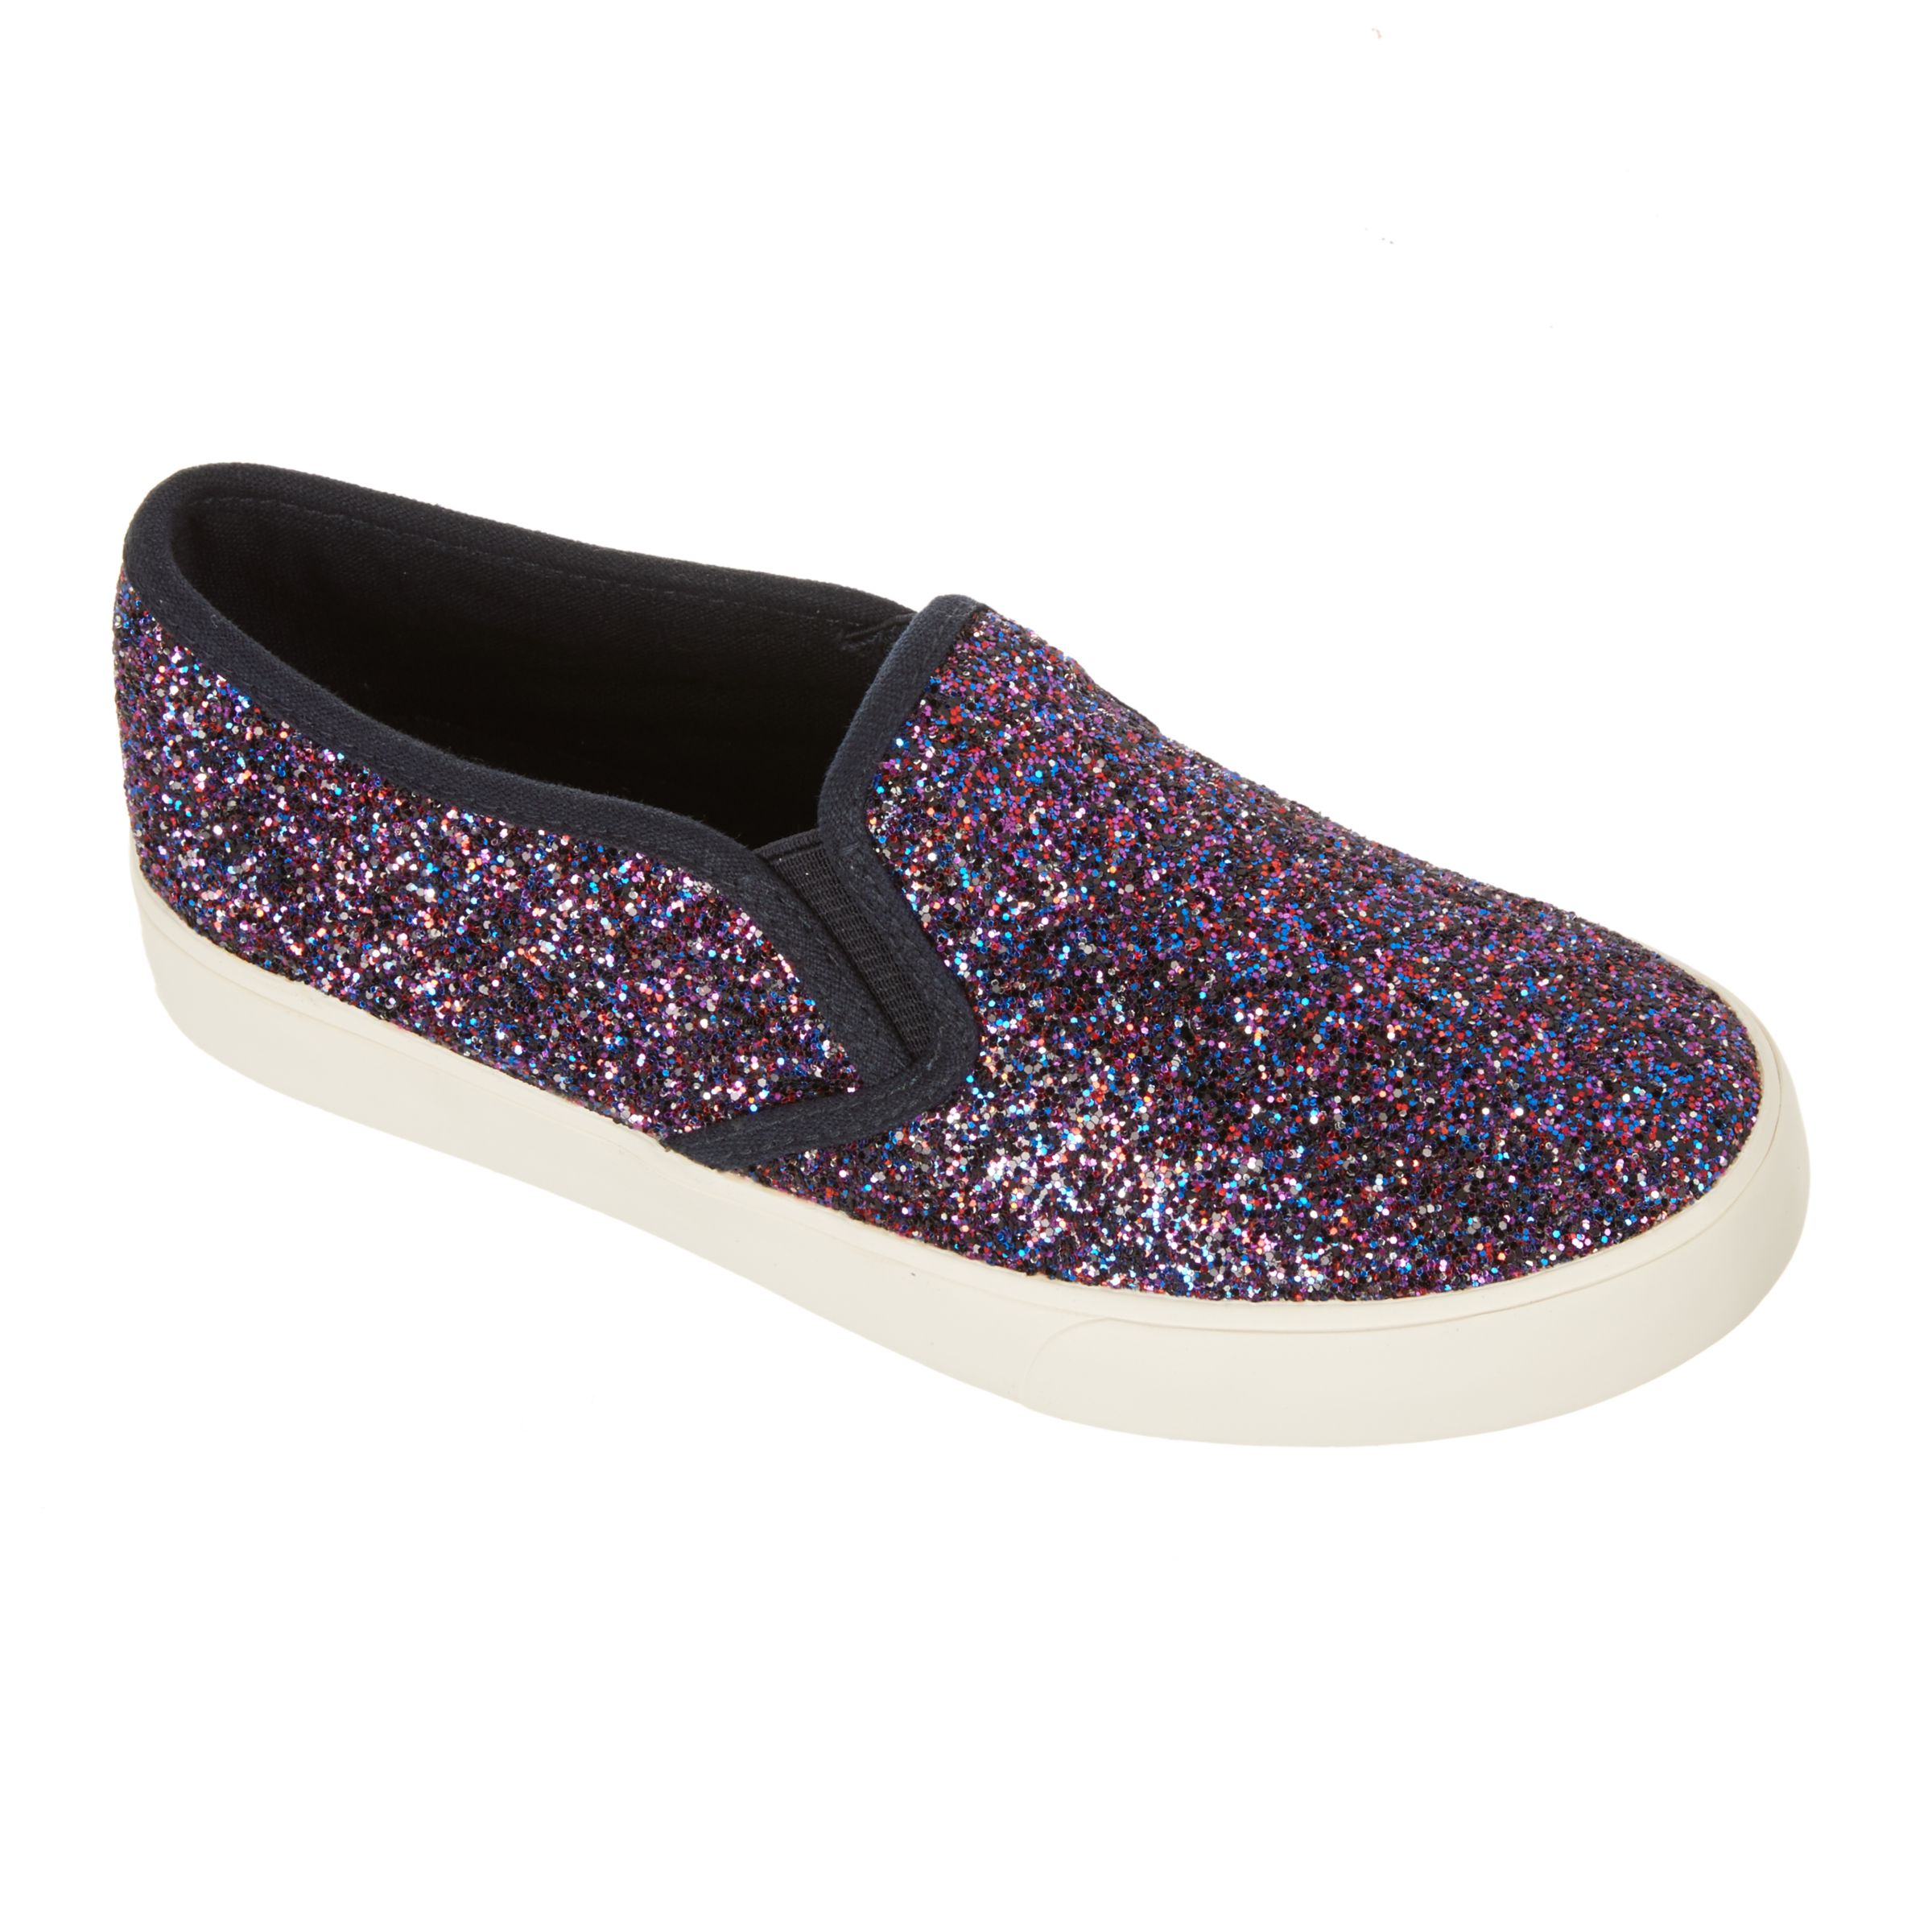 John Lewis & Partners Children's Pheobe Glitter Slip On Shoes, Purple, 6 Jnr